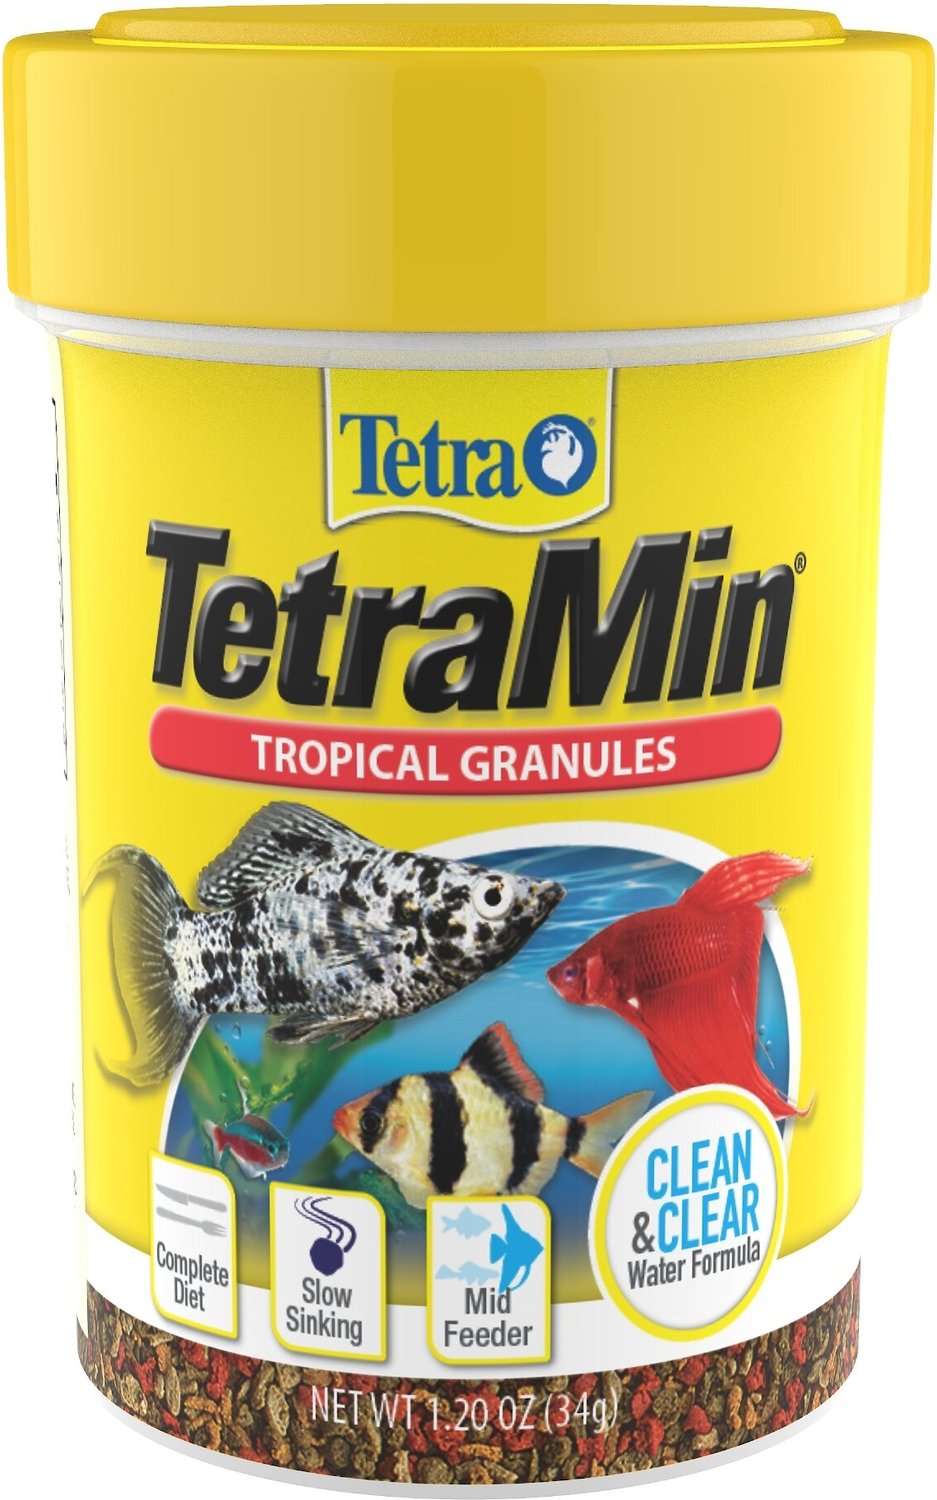 tropical fish food